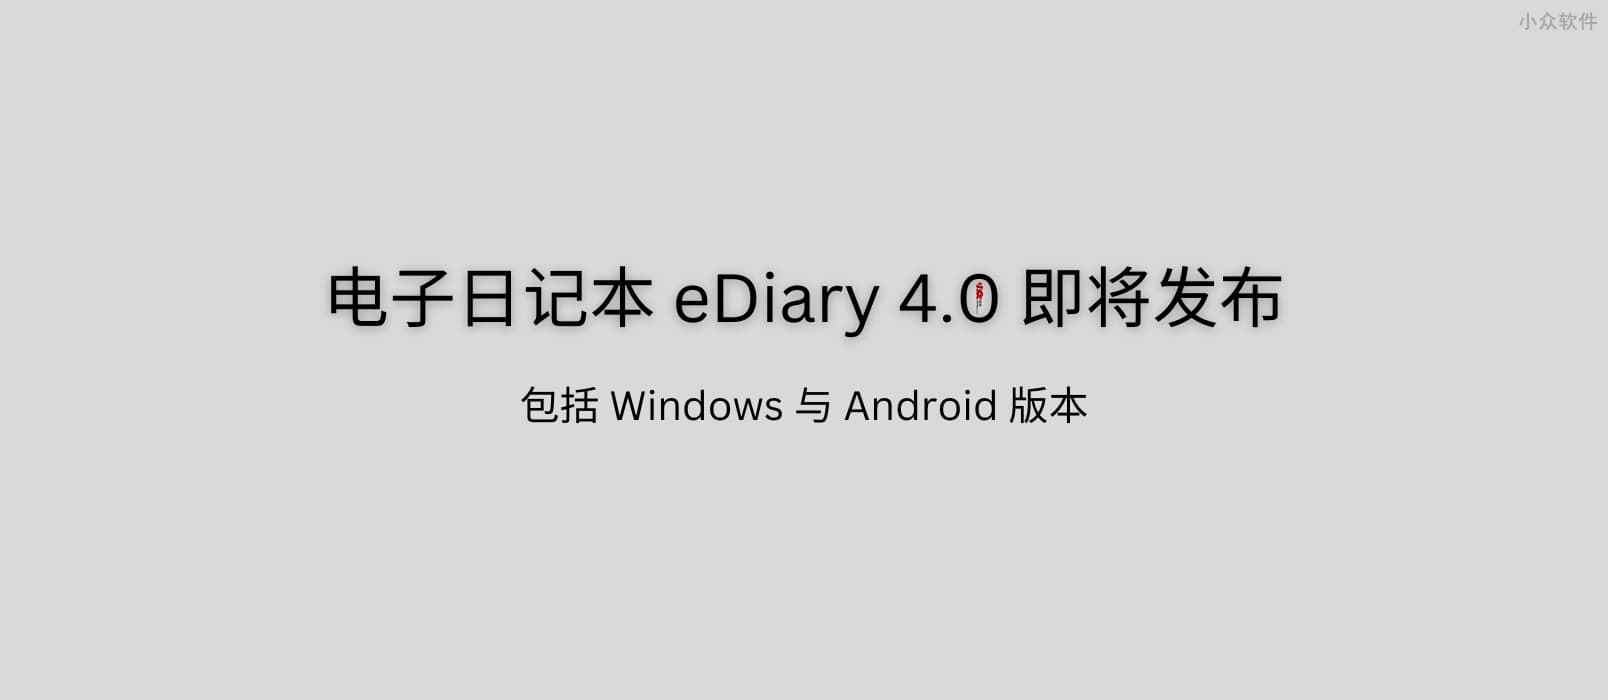 23 岁的电子日记本 eDiary 4.0 即将发布：我的白日梦 1